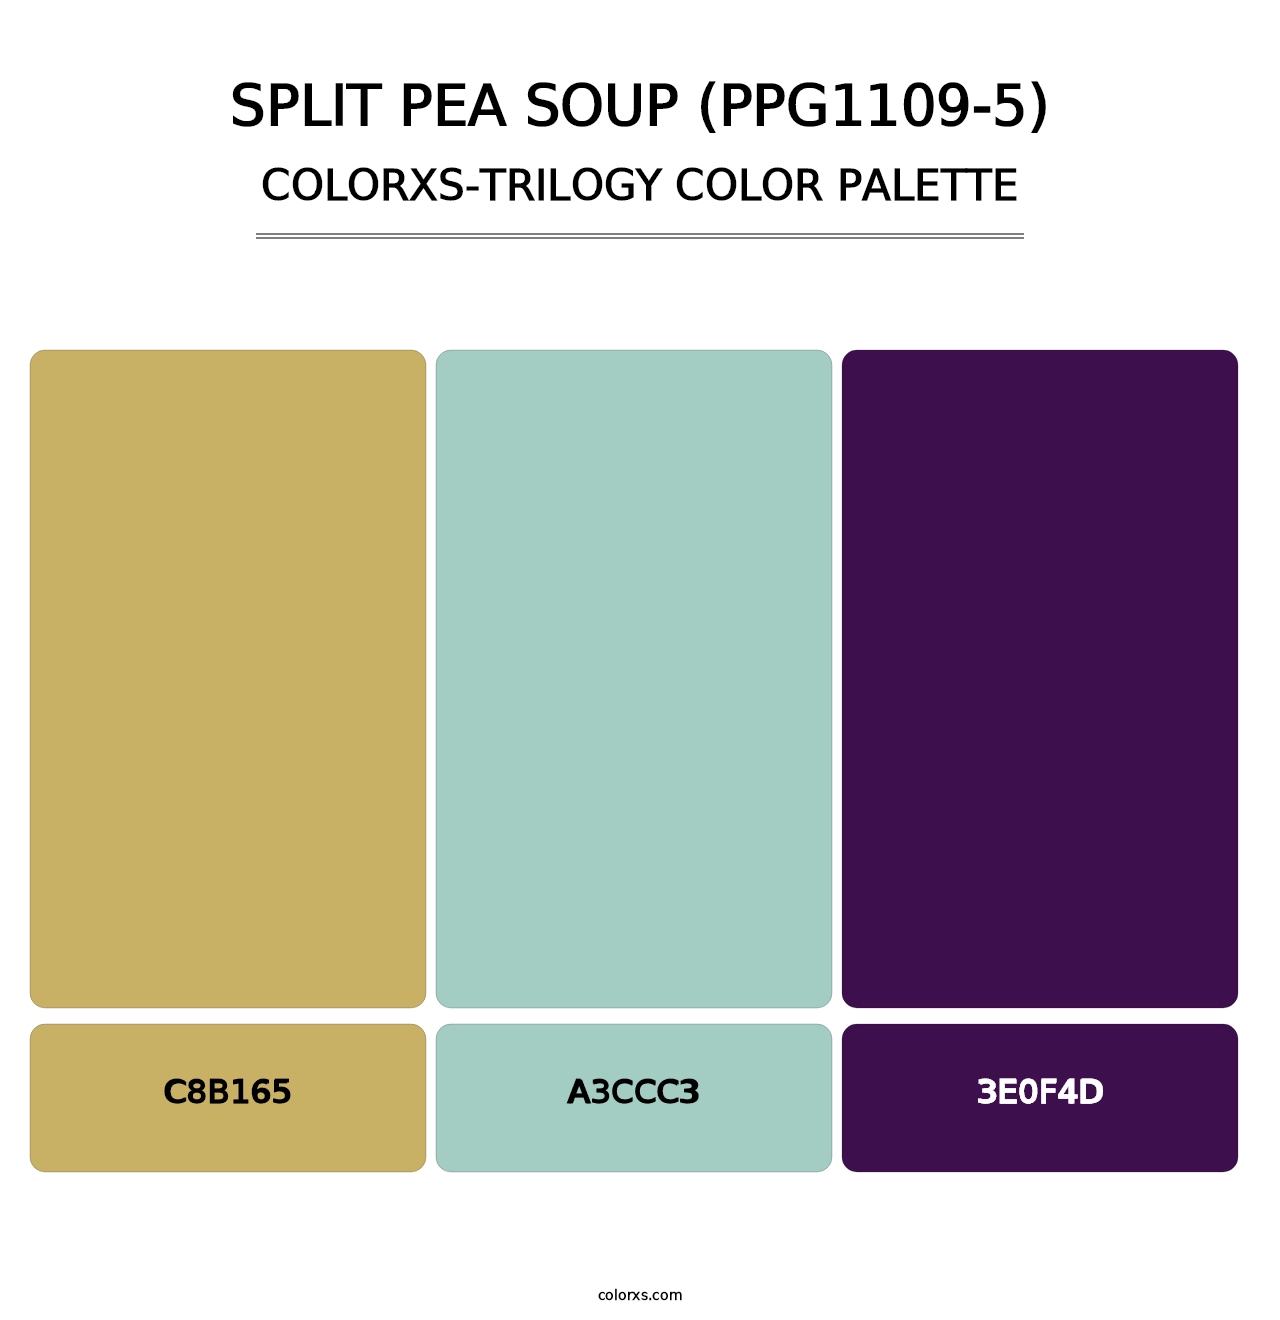 Split Pea Soup (PPG1109-5) - Colorxs Trilogy Palette